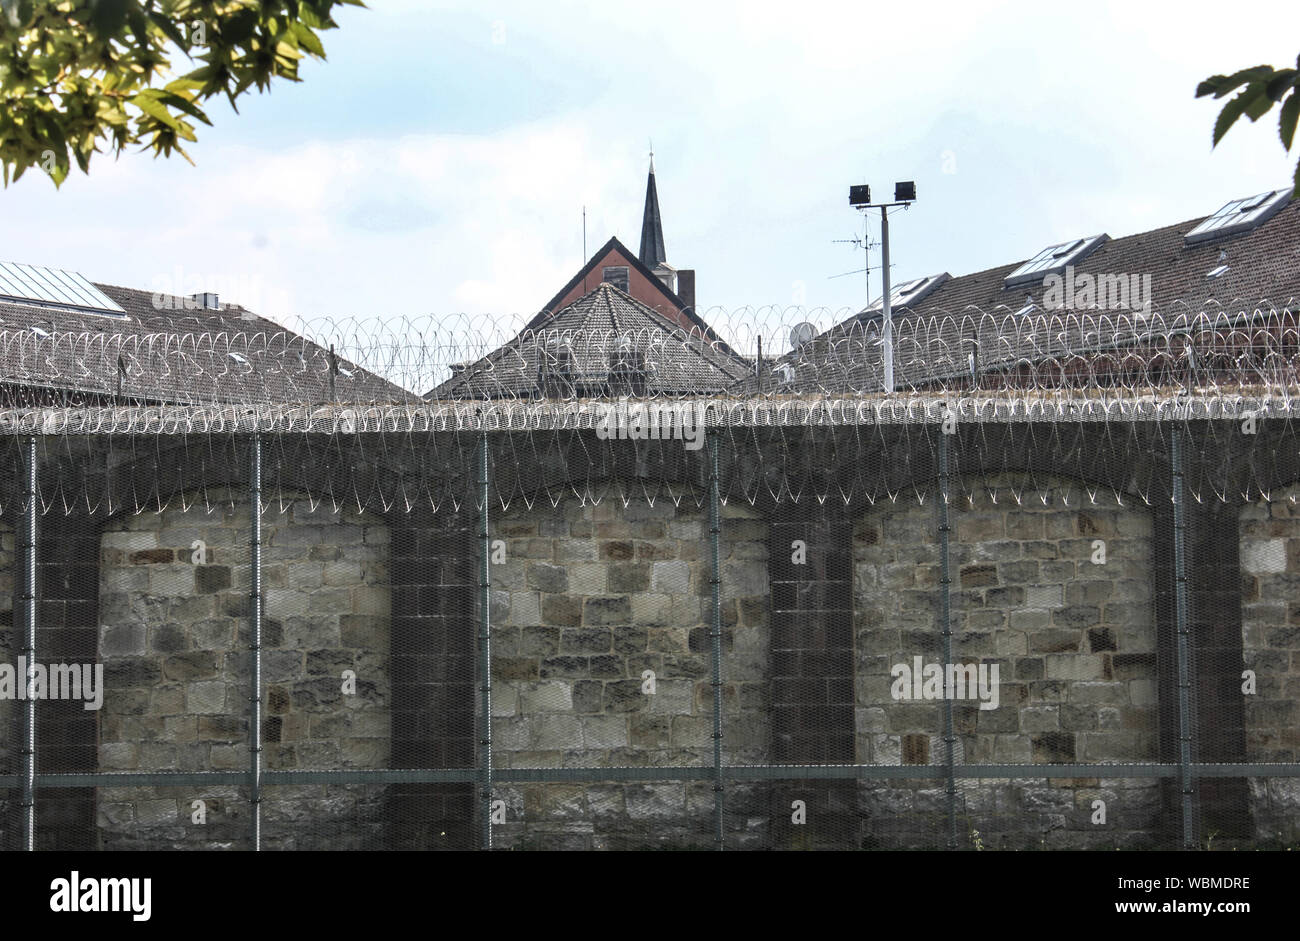 Vista dall'esterno: Muro di prigione con filo spannico. Germania, JVA Kassel. Simbolo per l'istituzione penale. Foto Stock